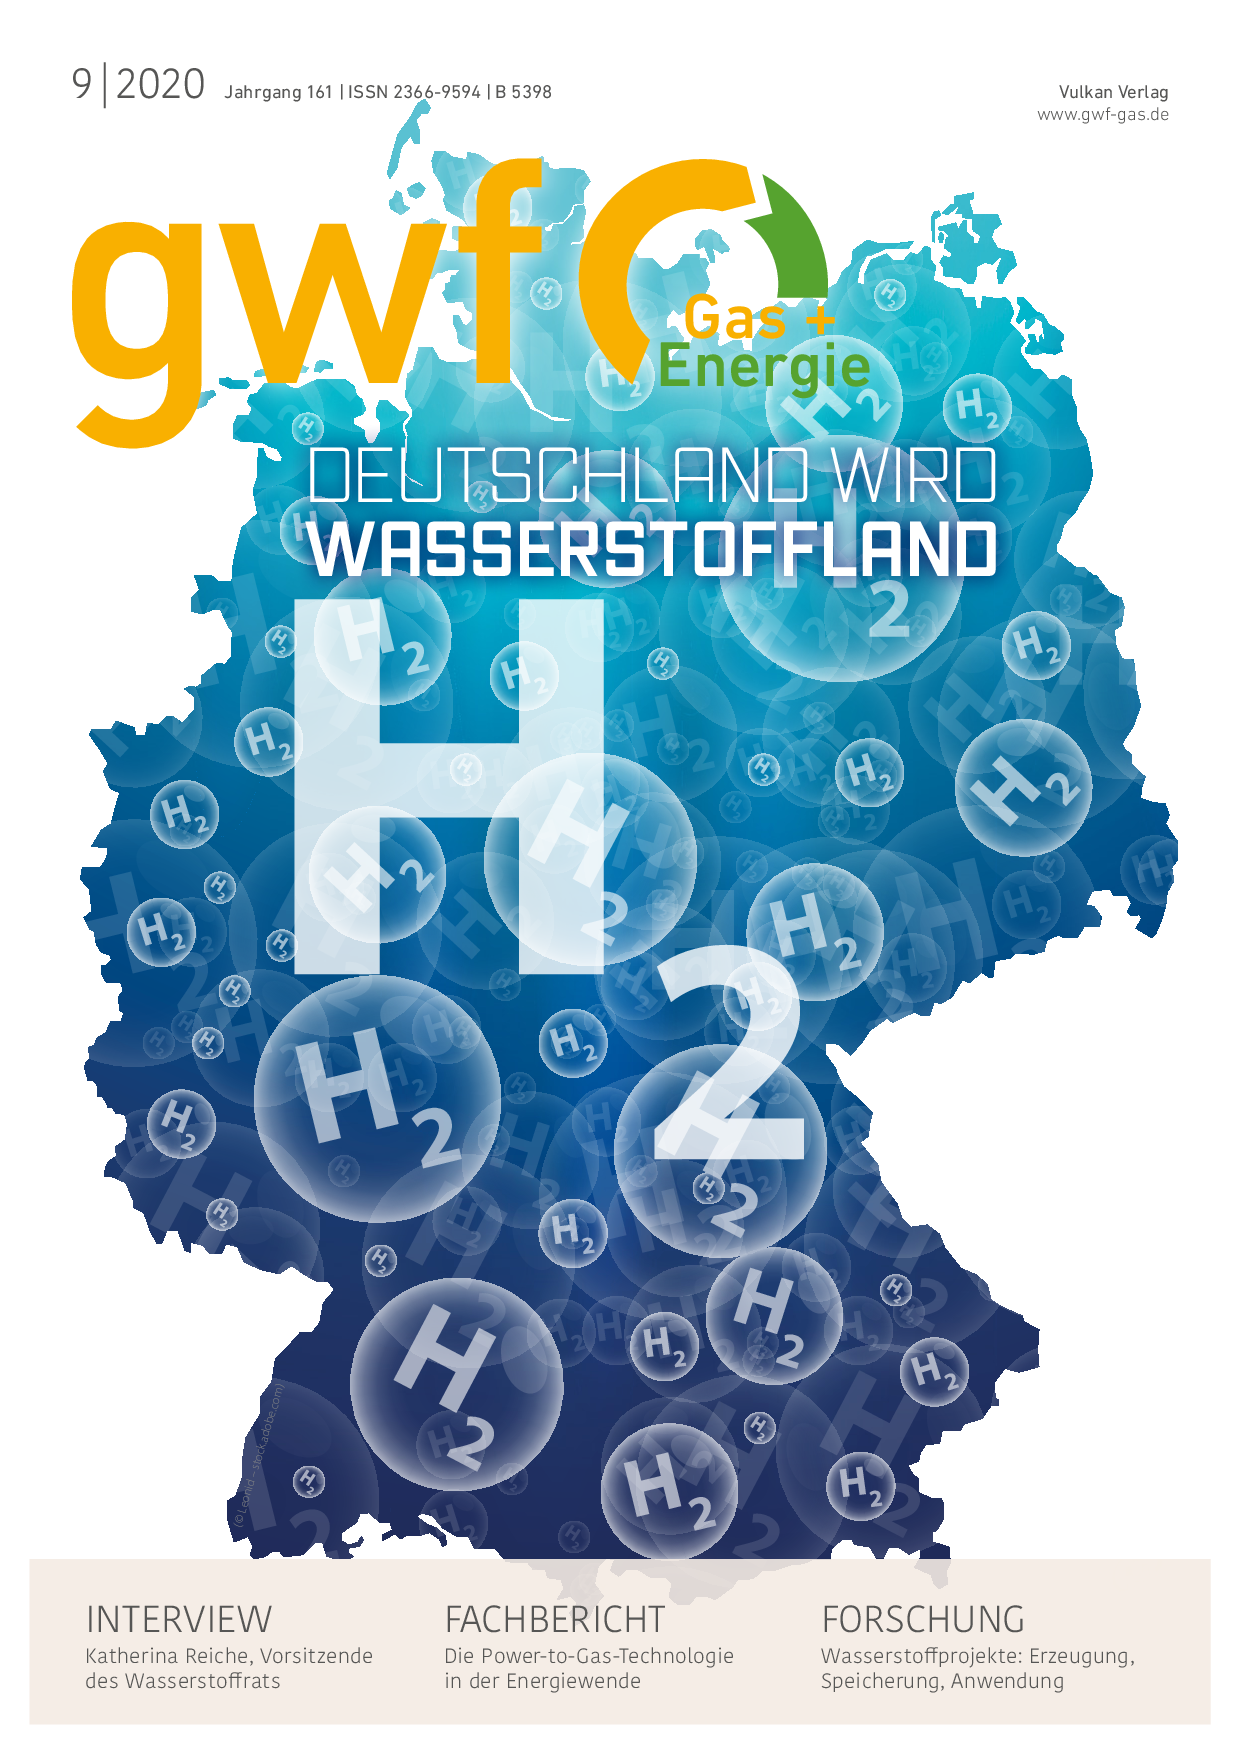 gwf Gas+Energie - 09 2020